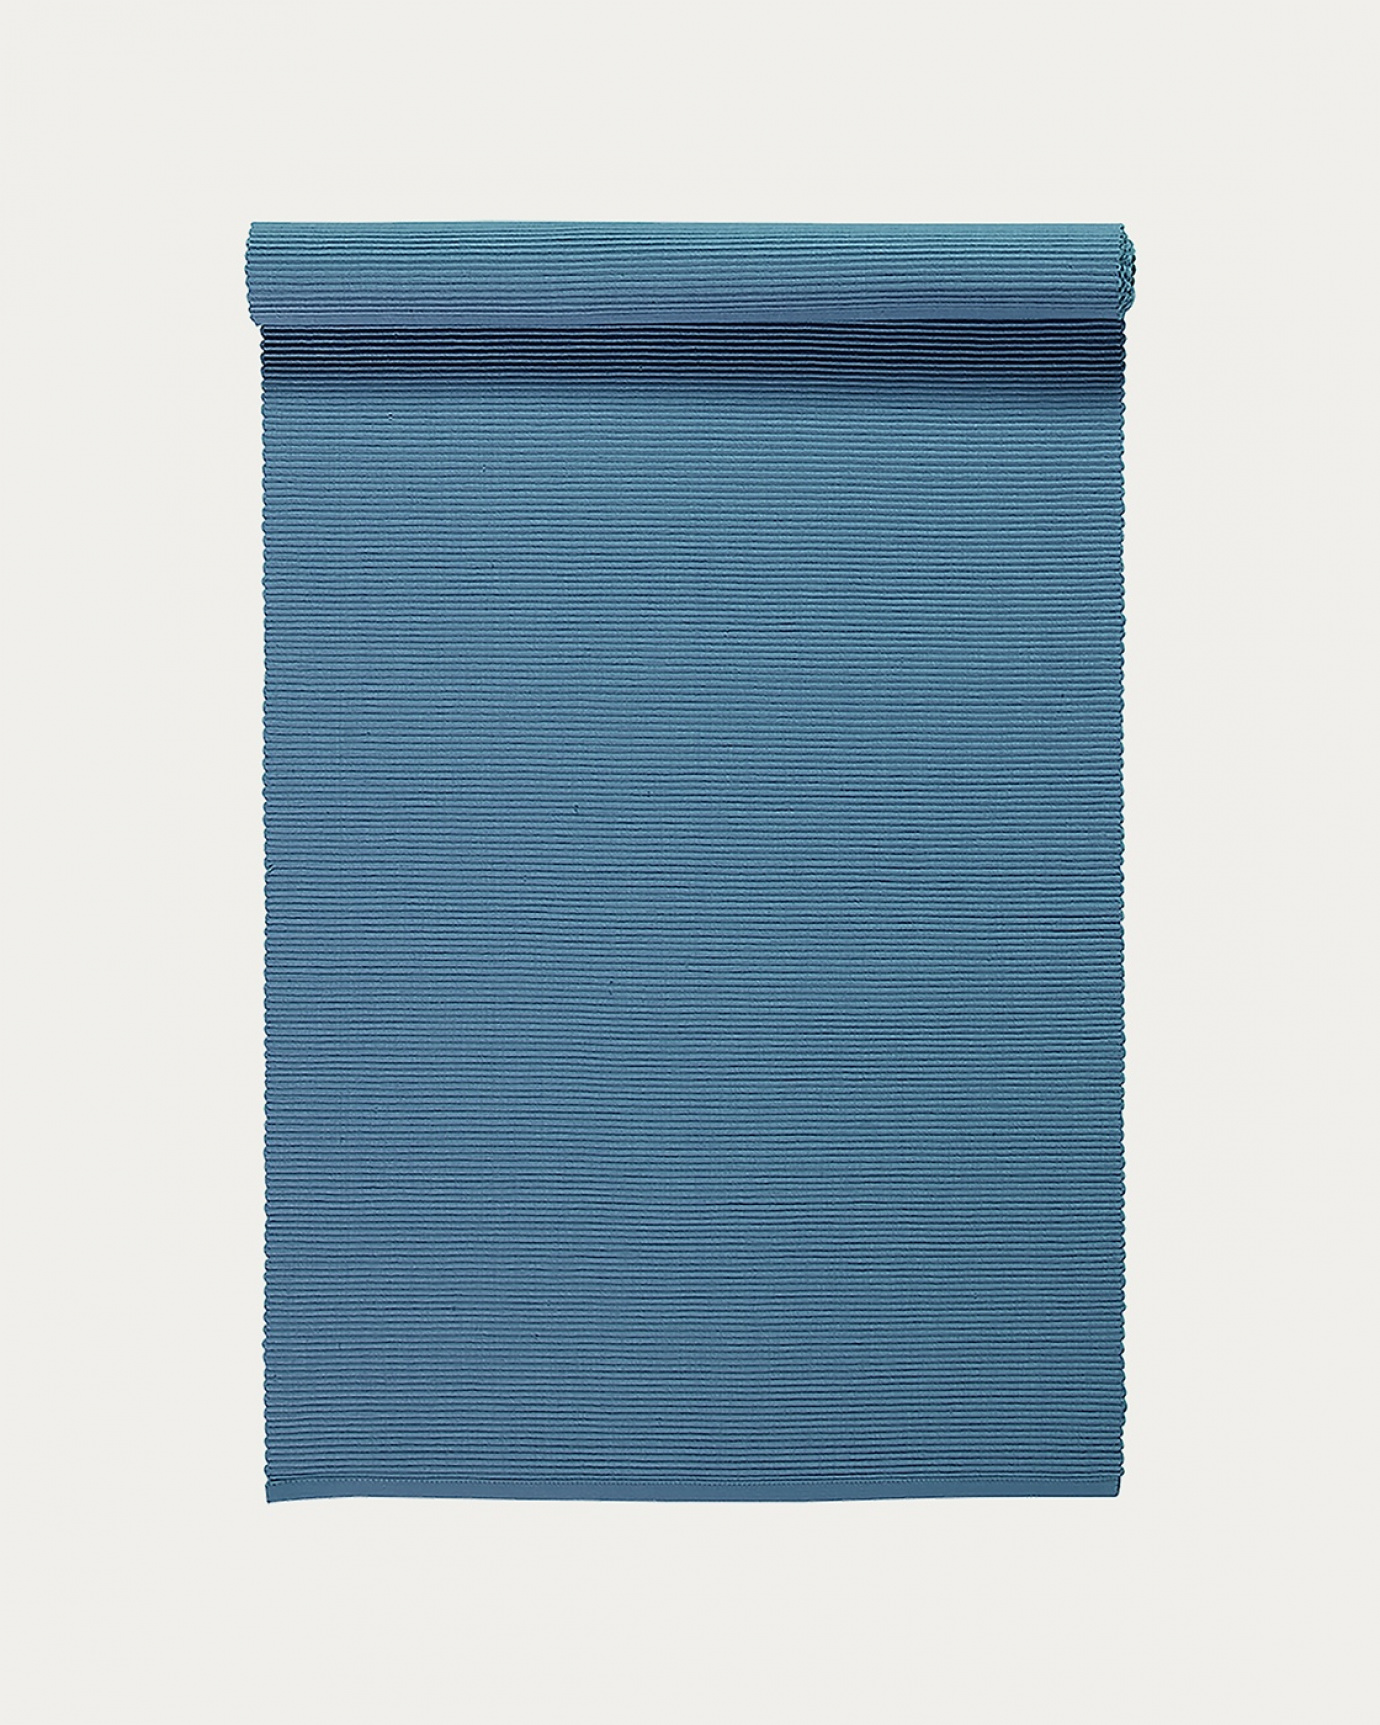 Immagine prodotto blu mare profondo runner UNI in morbido cotone a costine di qualità di LINUM DESIGN. Dimensioni 45x150 cm.